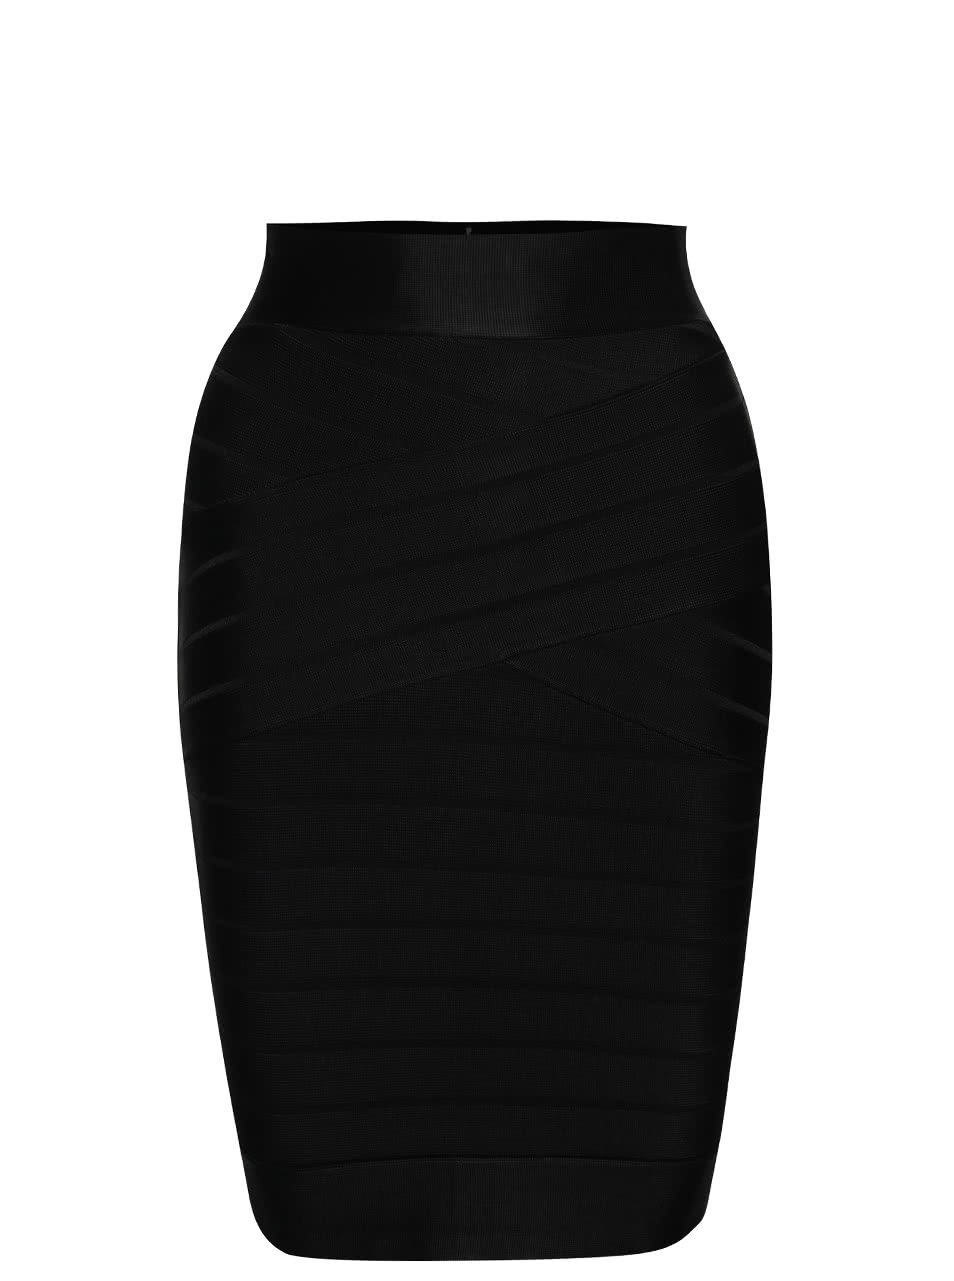 Černá elastická sukně se zipem French Connection Spotlight